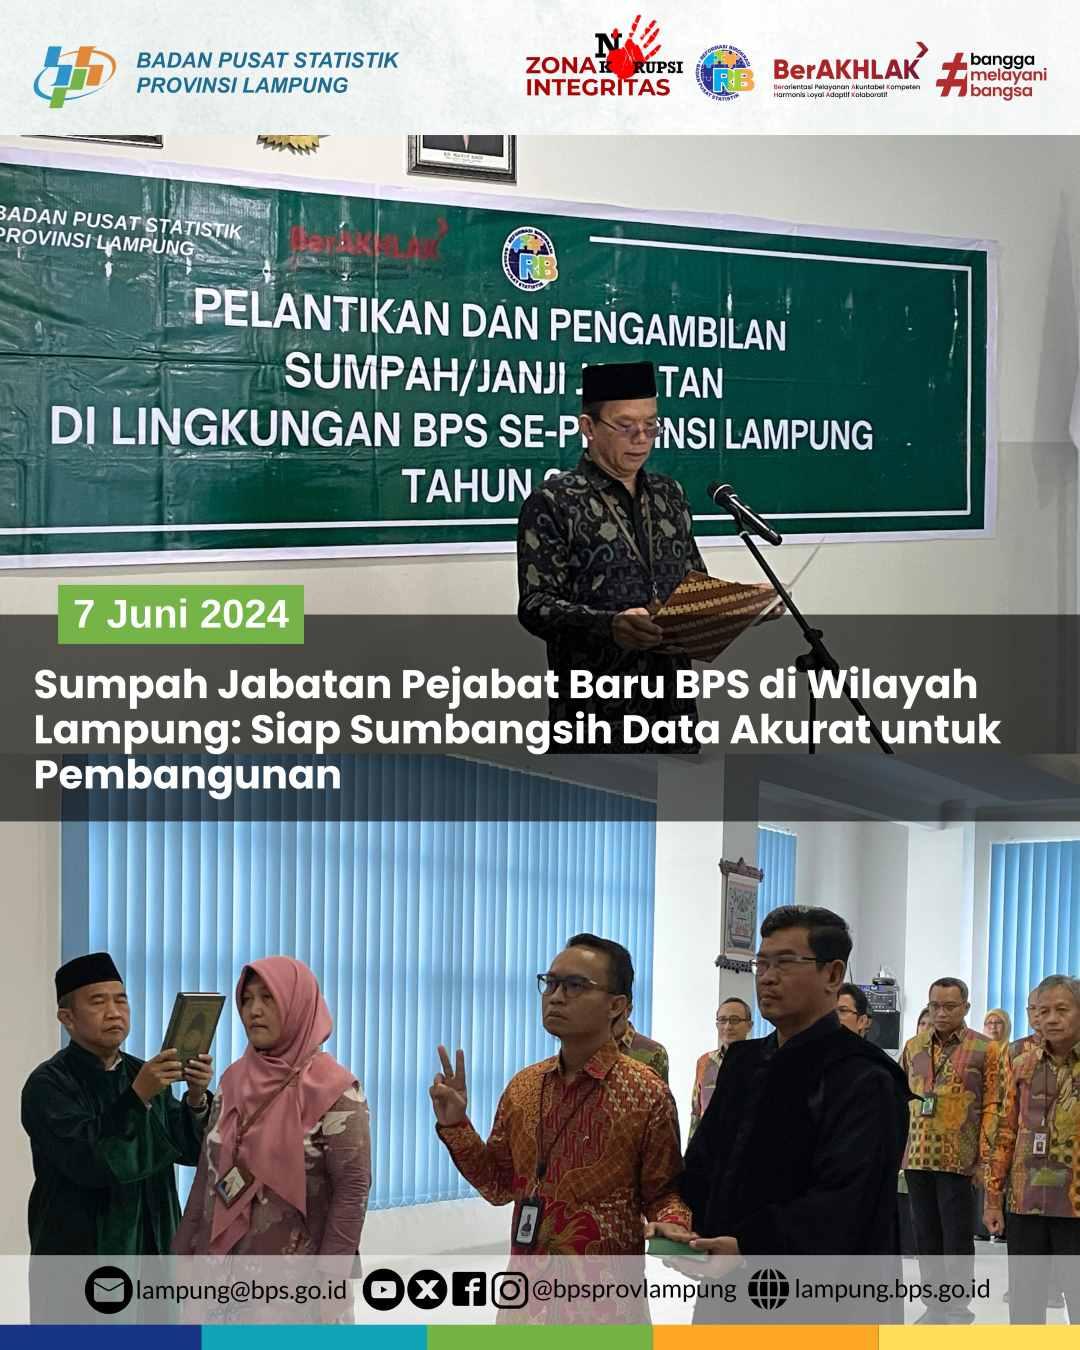 Sumpah Jabatan Pejabat Baru BPS di Wilayah Lampung: Siap Sumbangsih Data Akurat untuk Pembangunan